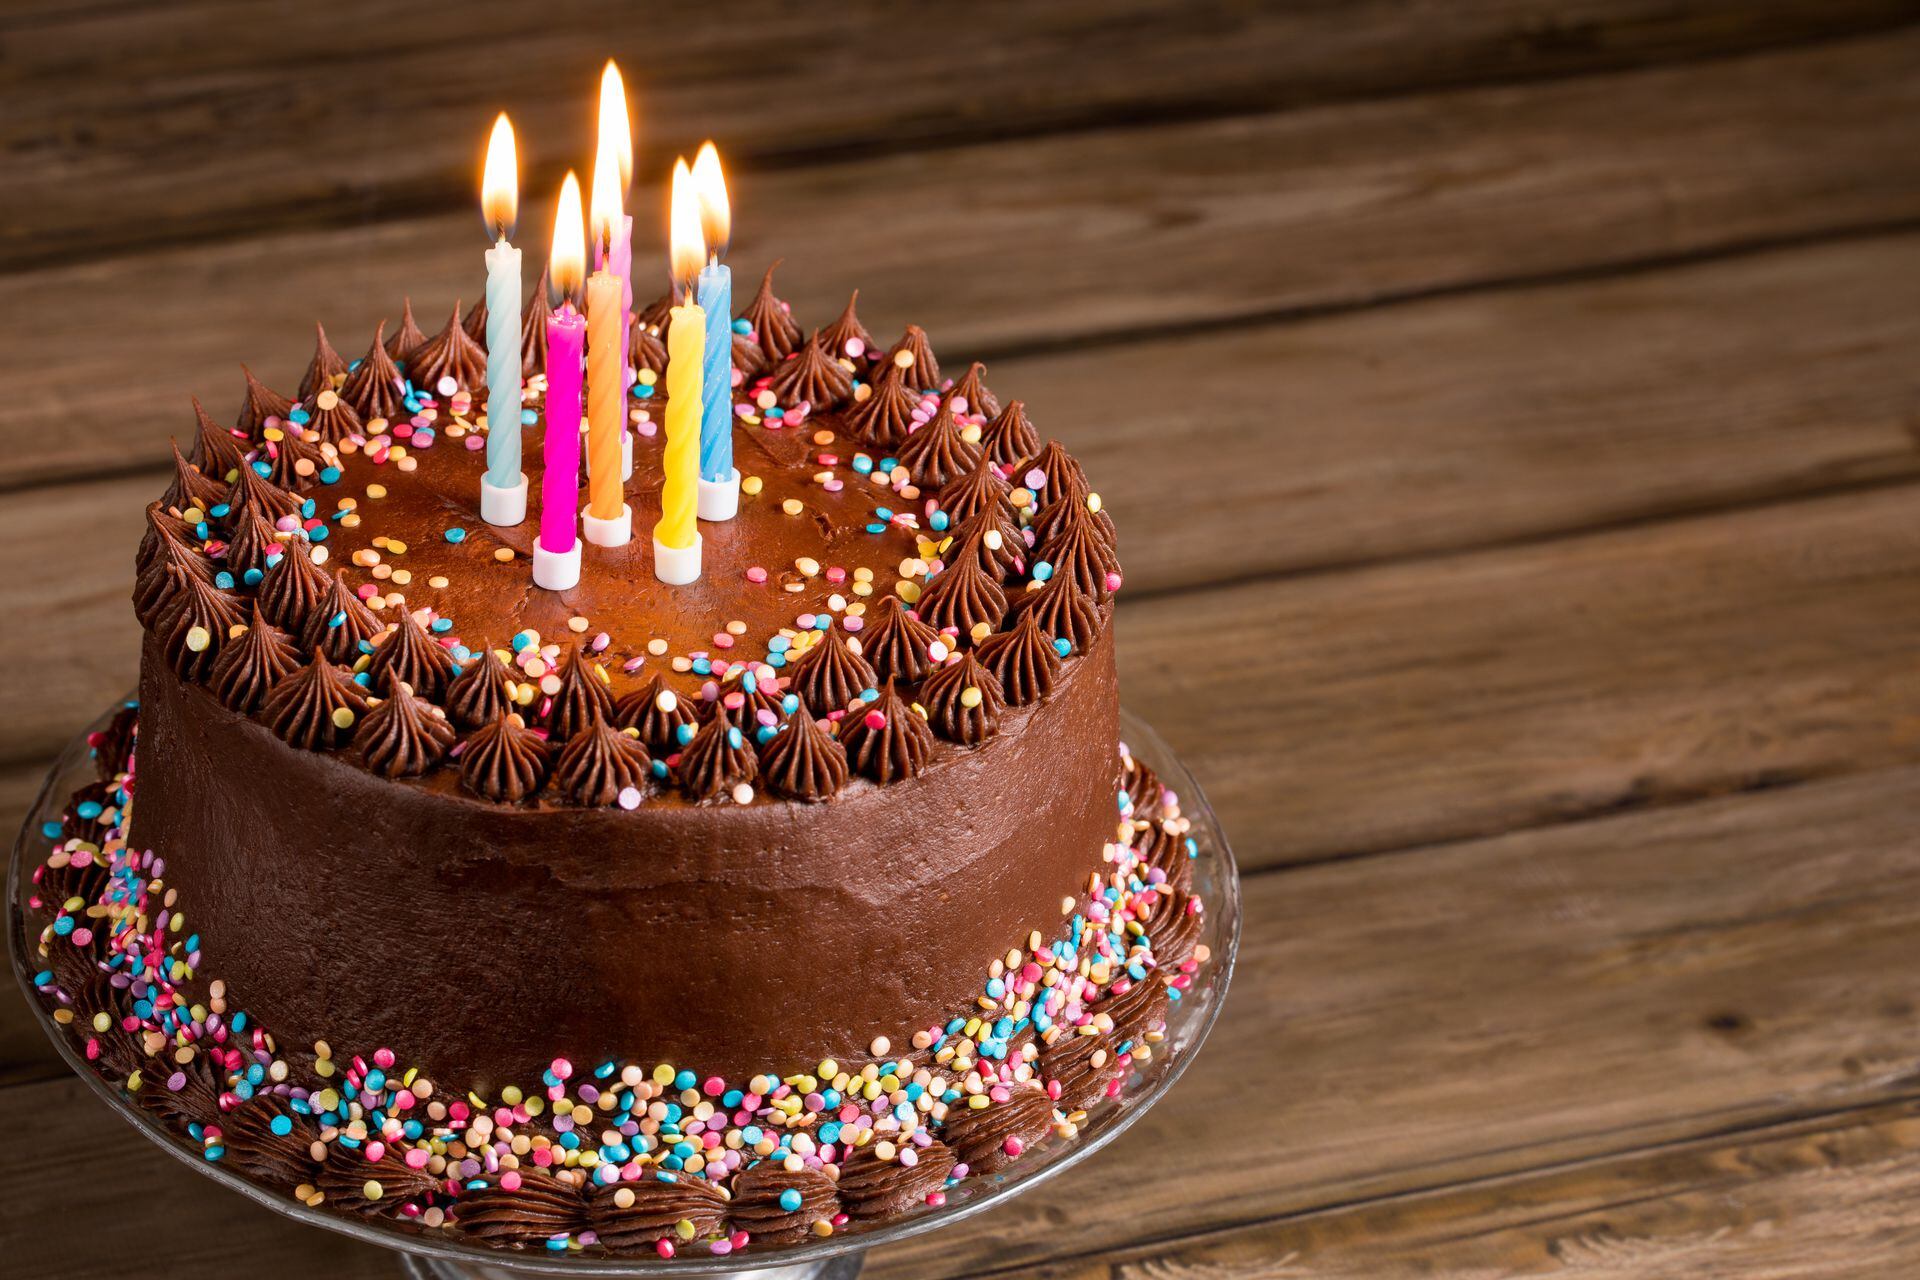 Pilas: estas son las fechas de cumpleaños más comunes en el mundo, ¿está la  suya?